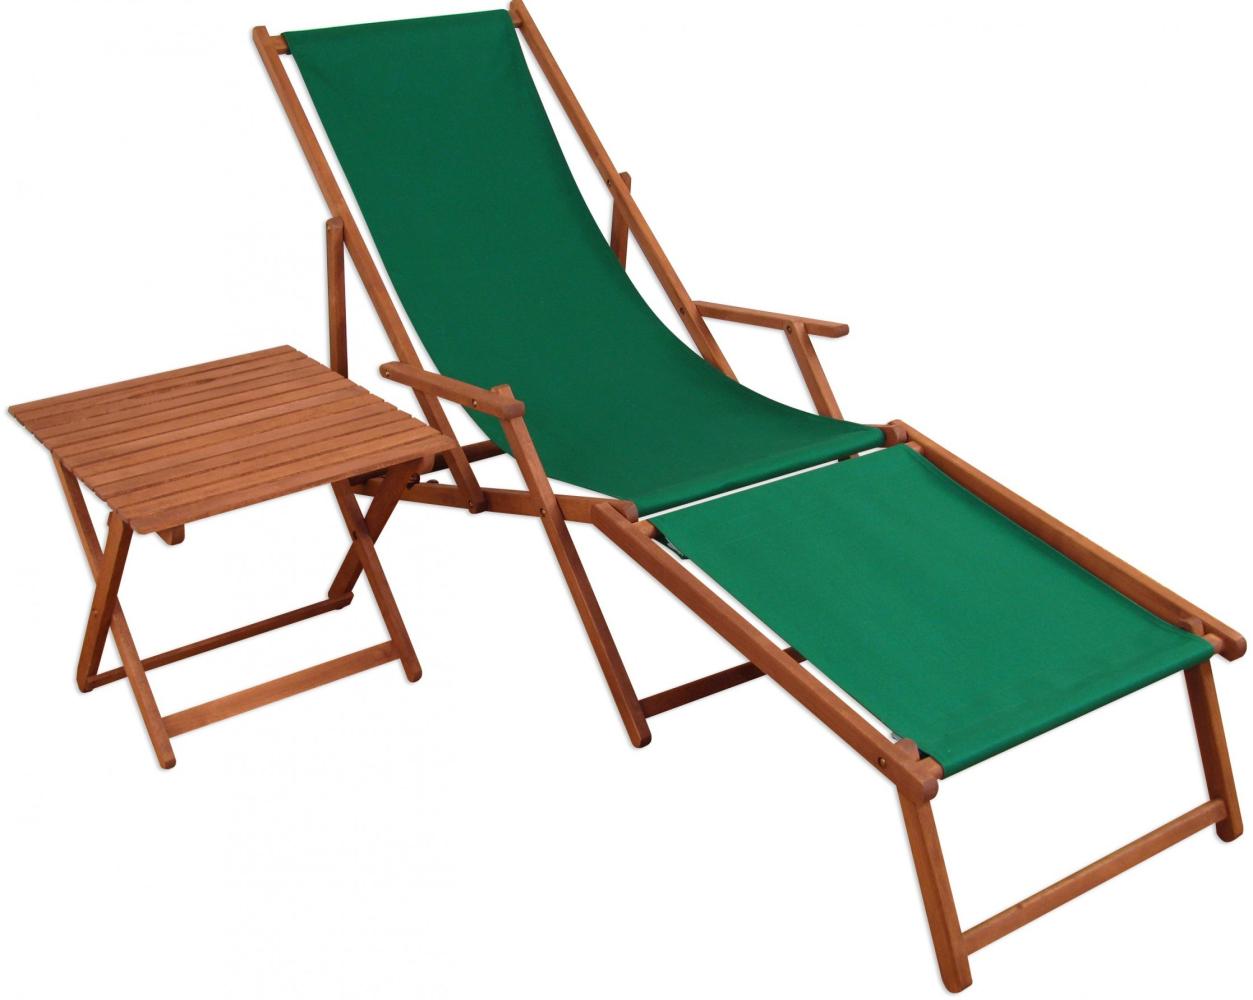 Gartenliege Sonnenliege grün Liegestuhl Fußteil Tisch Deckchair Holz Gartenmöbel 10-304 F T Bild 1